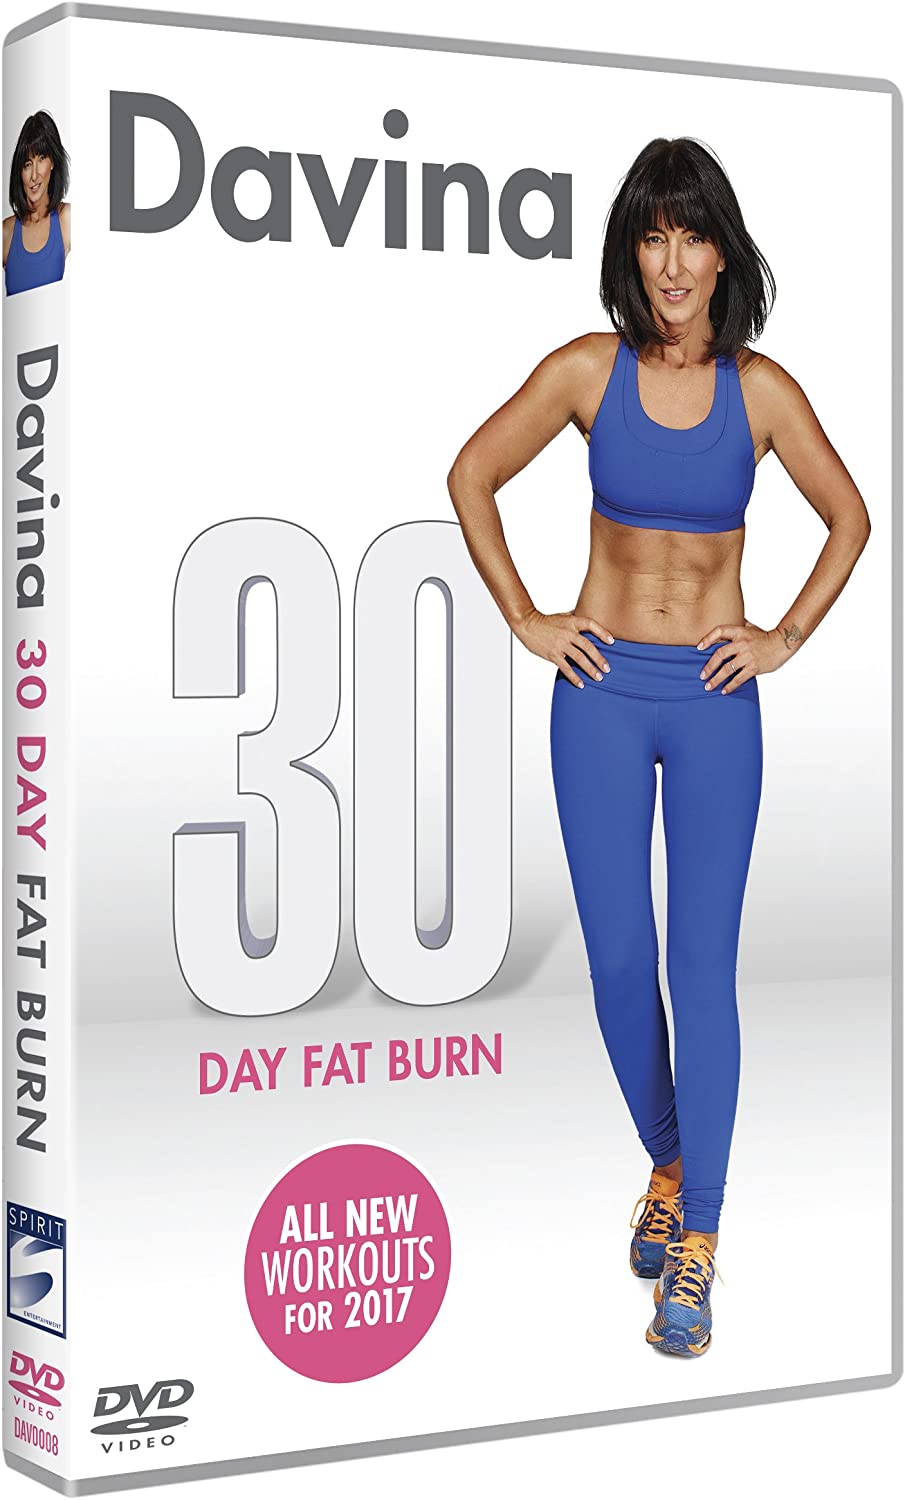 Davina - Brûler les graisses pendant 30 jours [DVD]